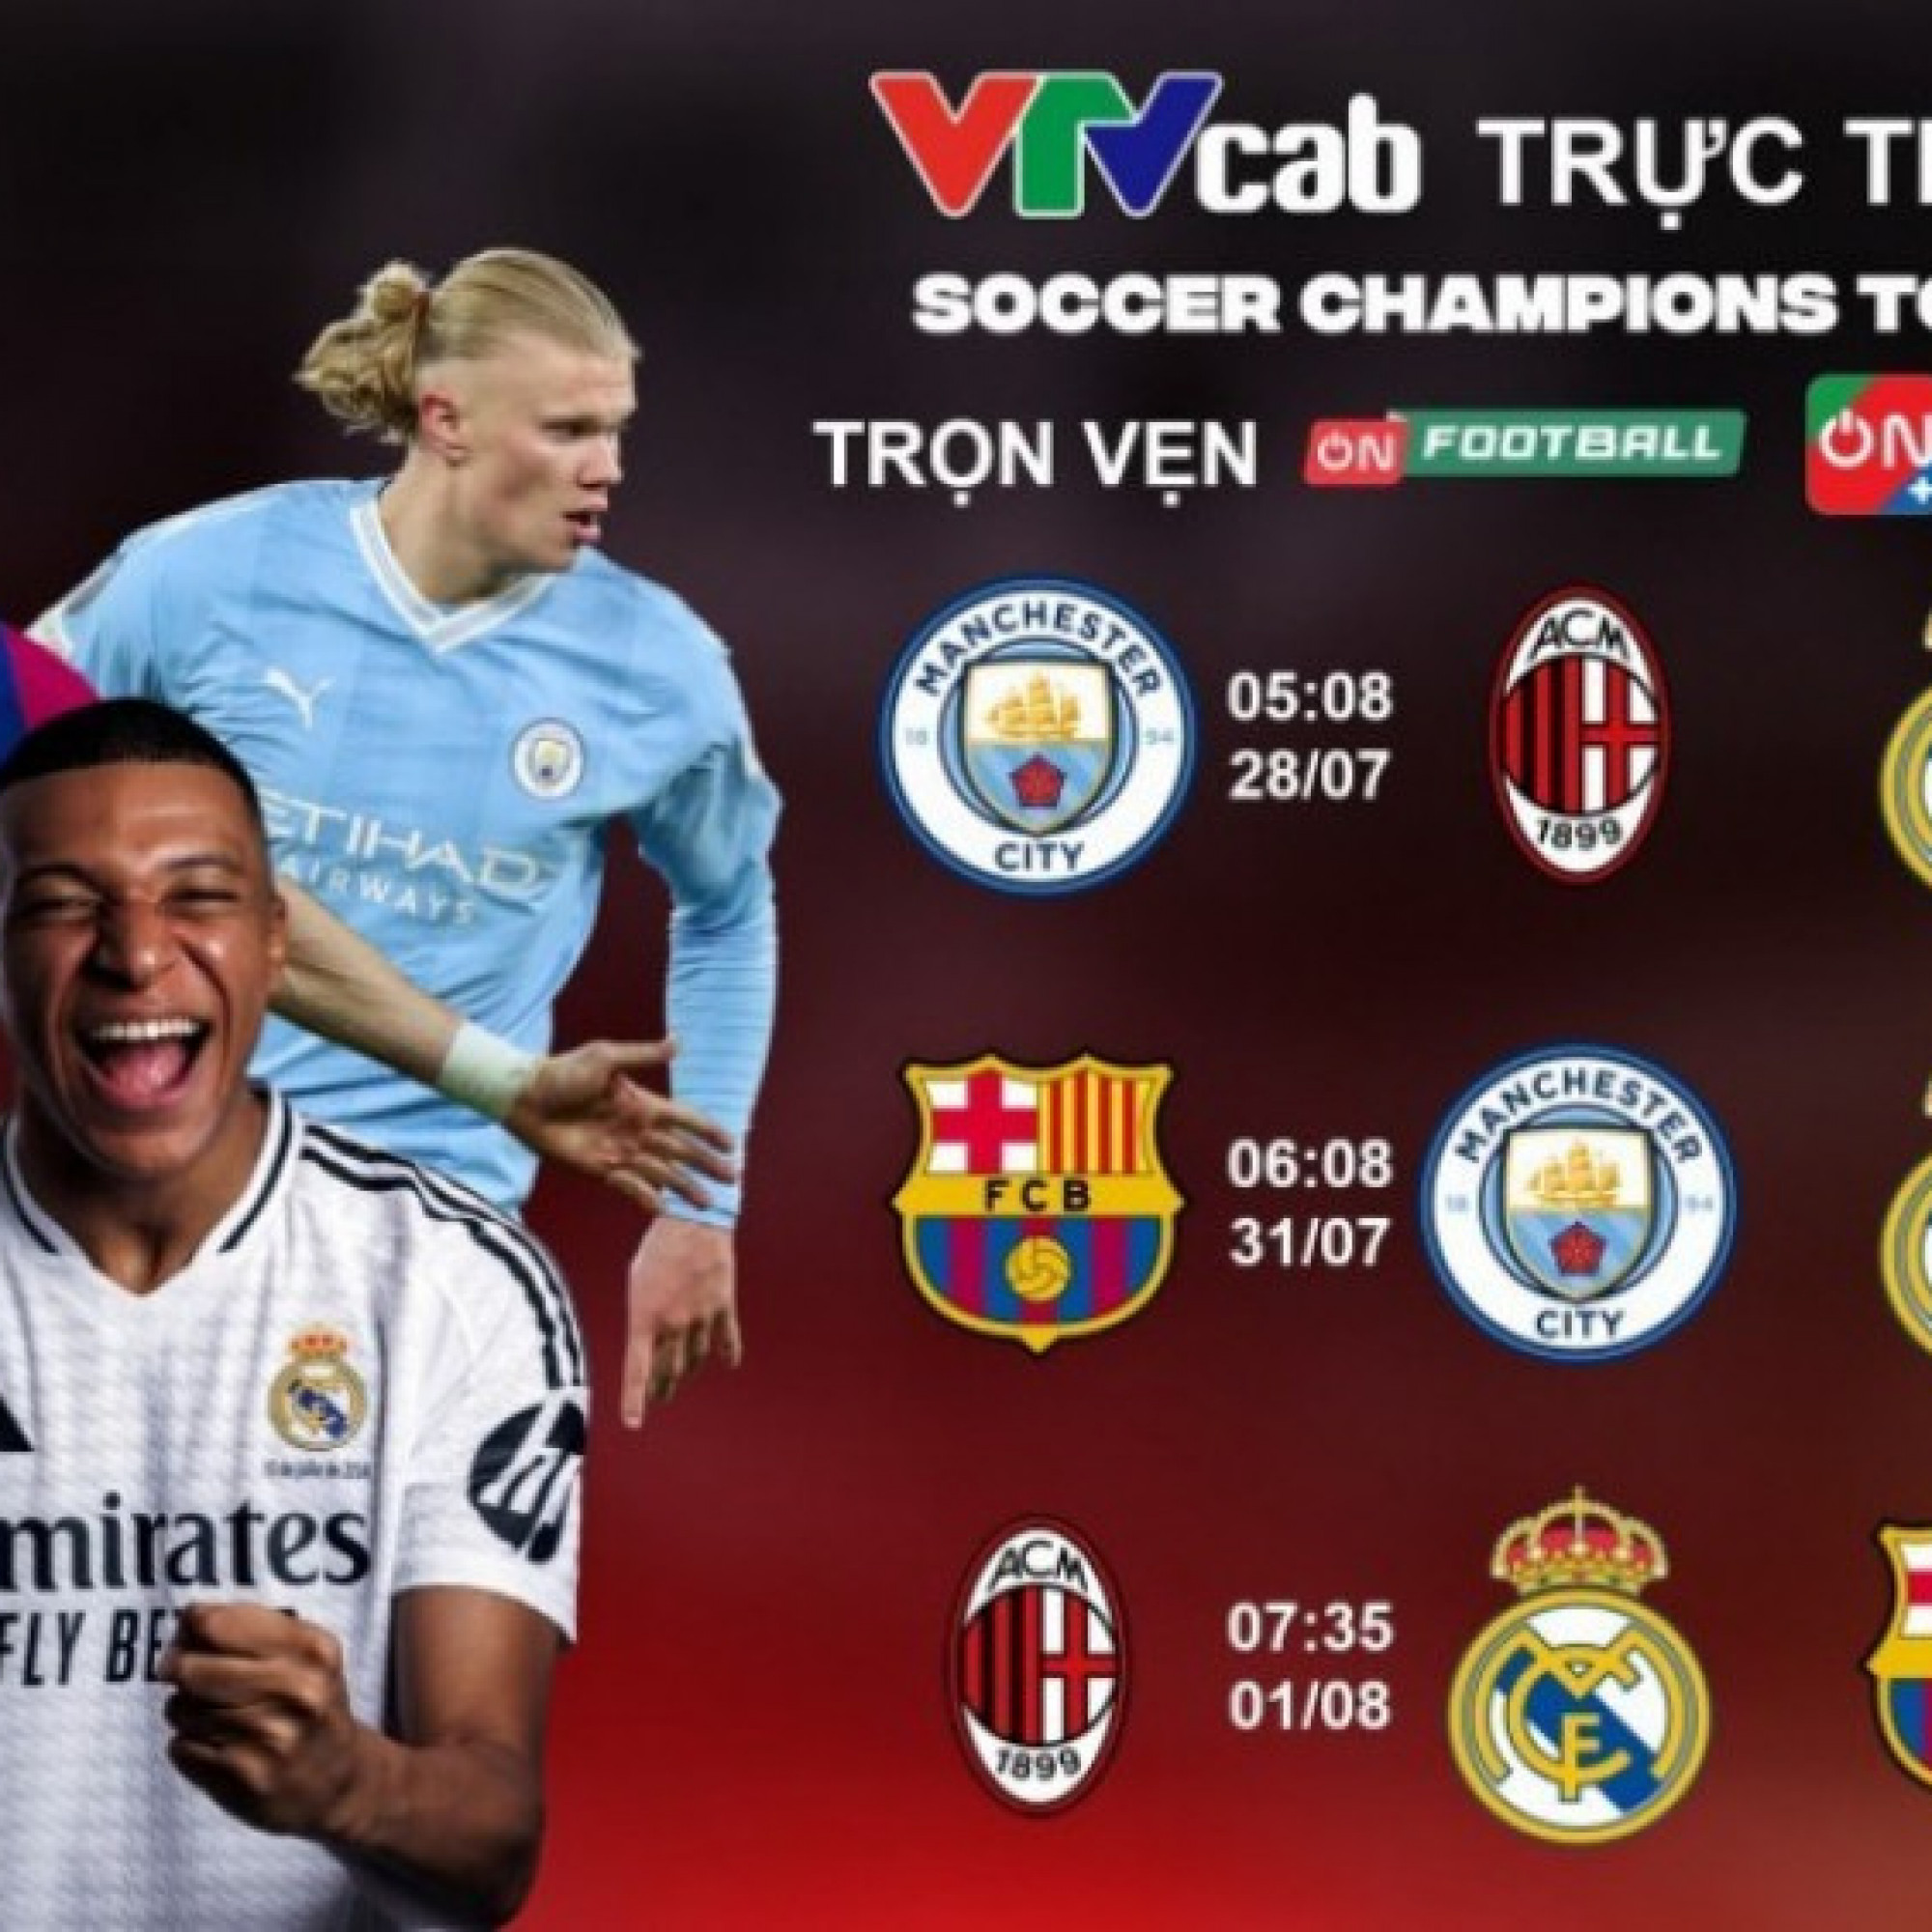 VTVcab trực tiếp Tour du đấu Siêu kinh điển của Real Madrid, Barca, Man City